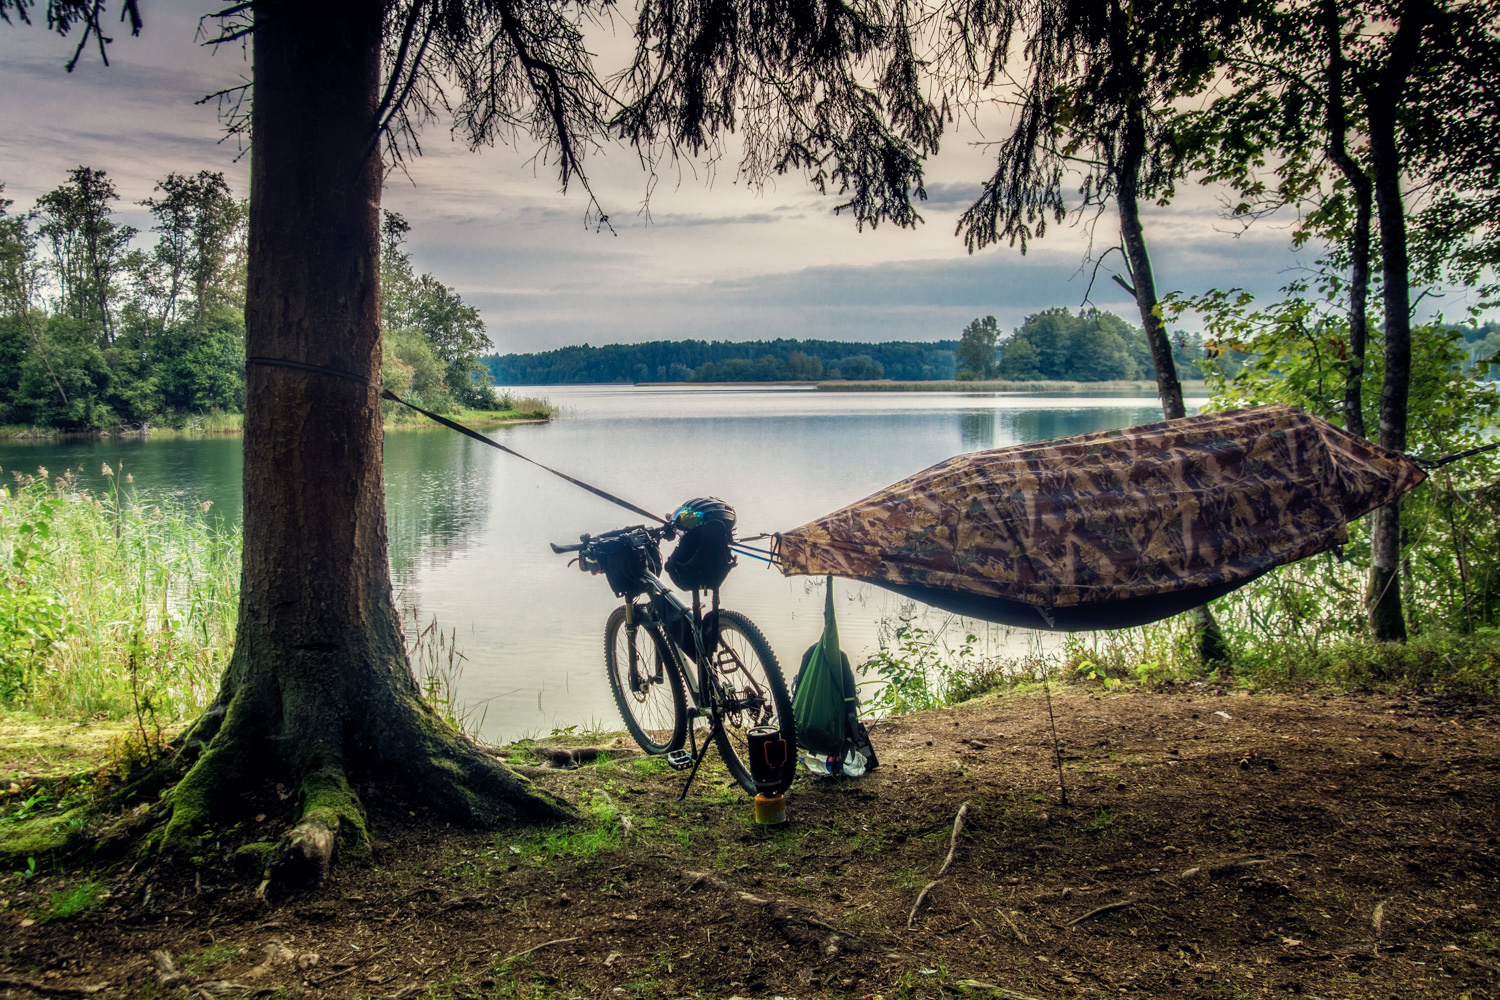 Ночёвка у озера катание на велосипеде велосипед озеро гамак палатка утро красота туризм